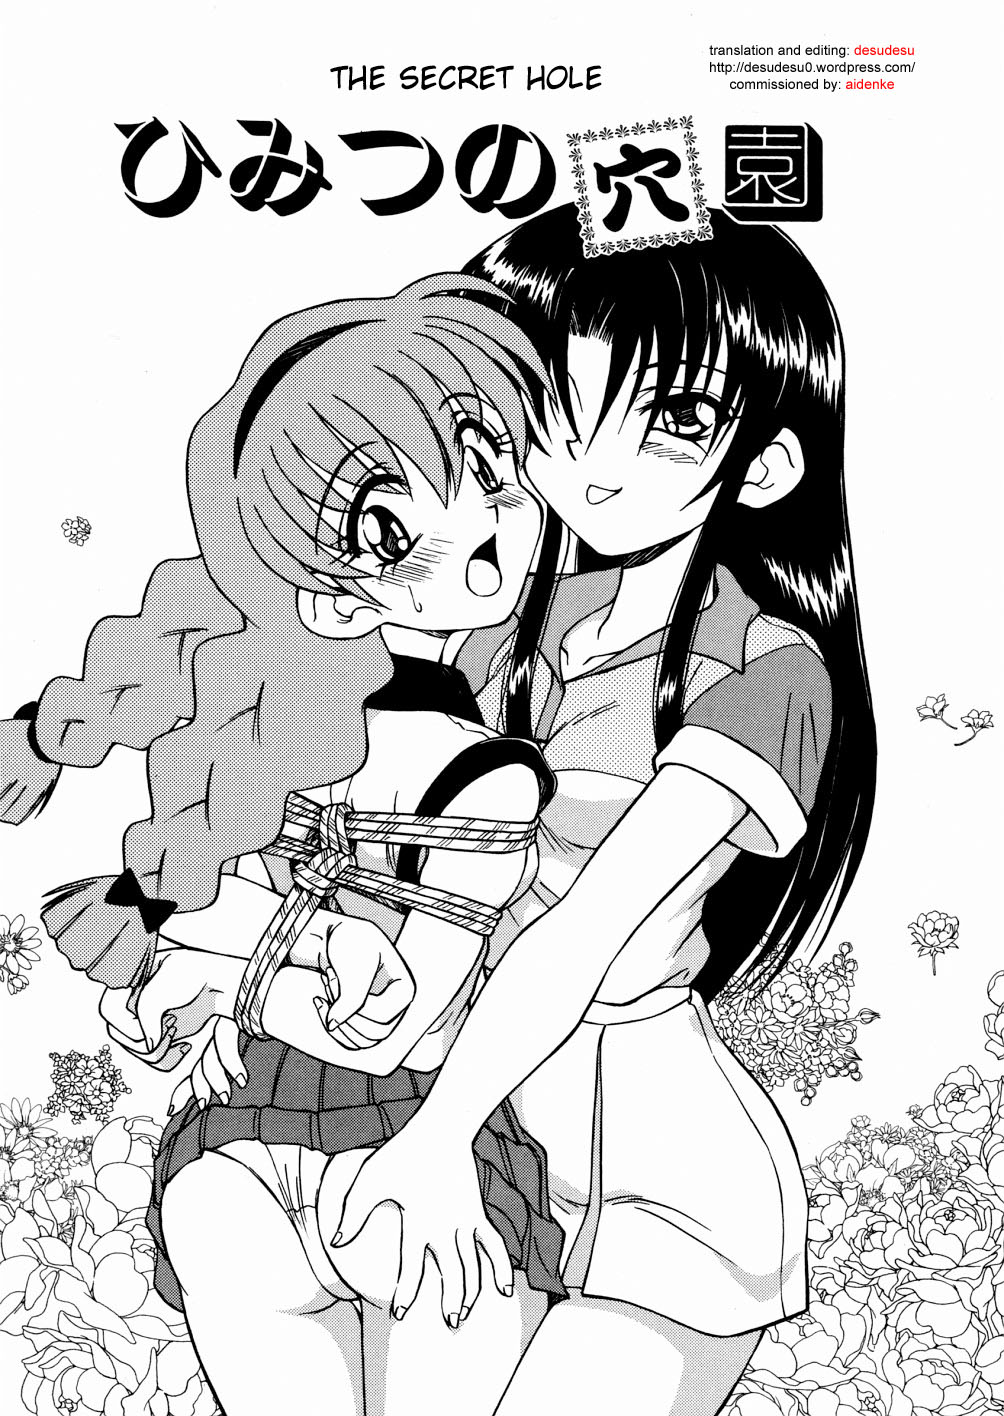 Read Spark Utamaro Seihuku Dai Seihuku Eng Hentai Porns Manga And Porncomics Xxx